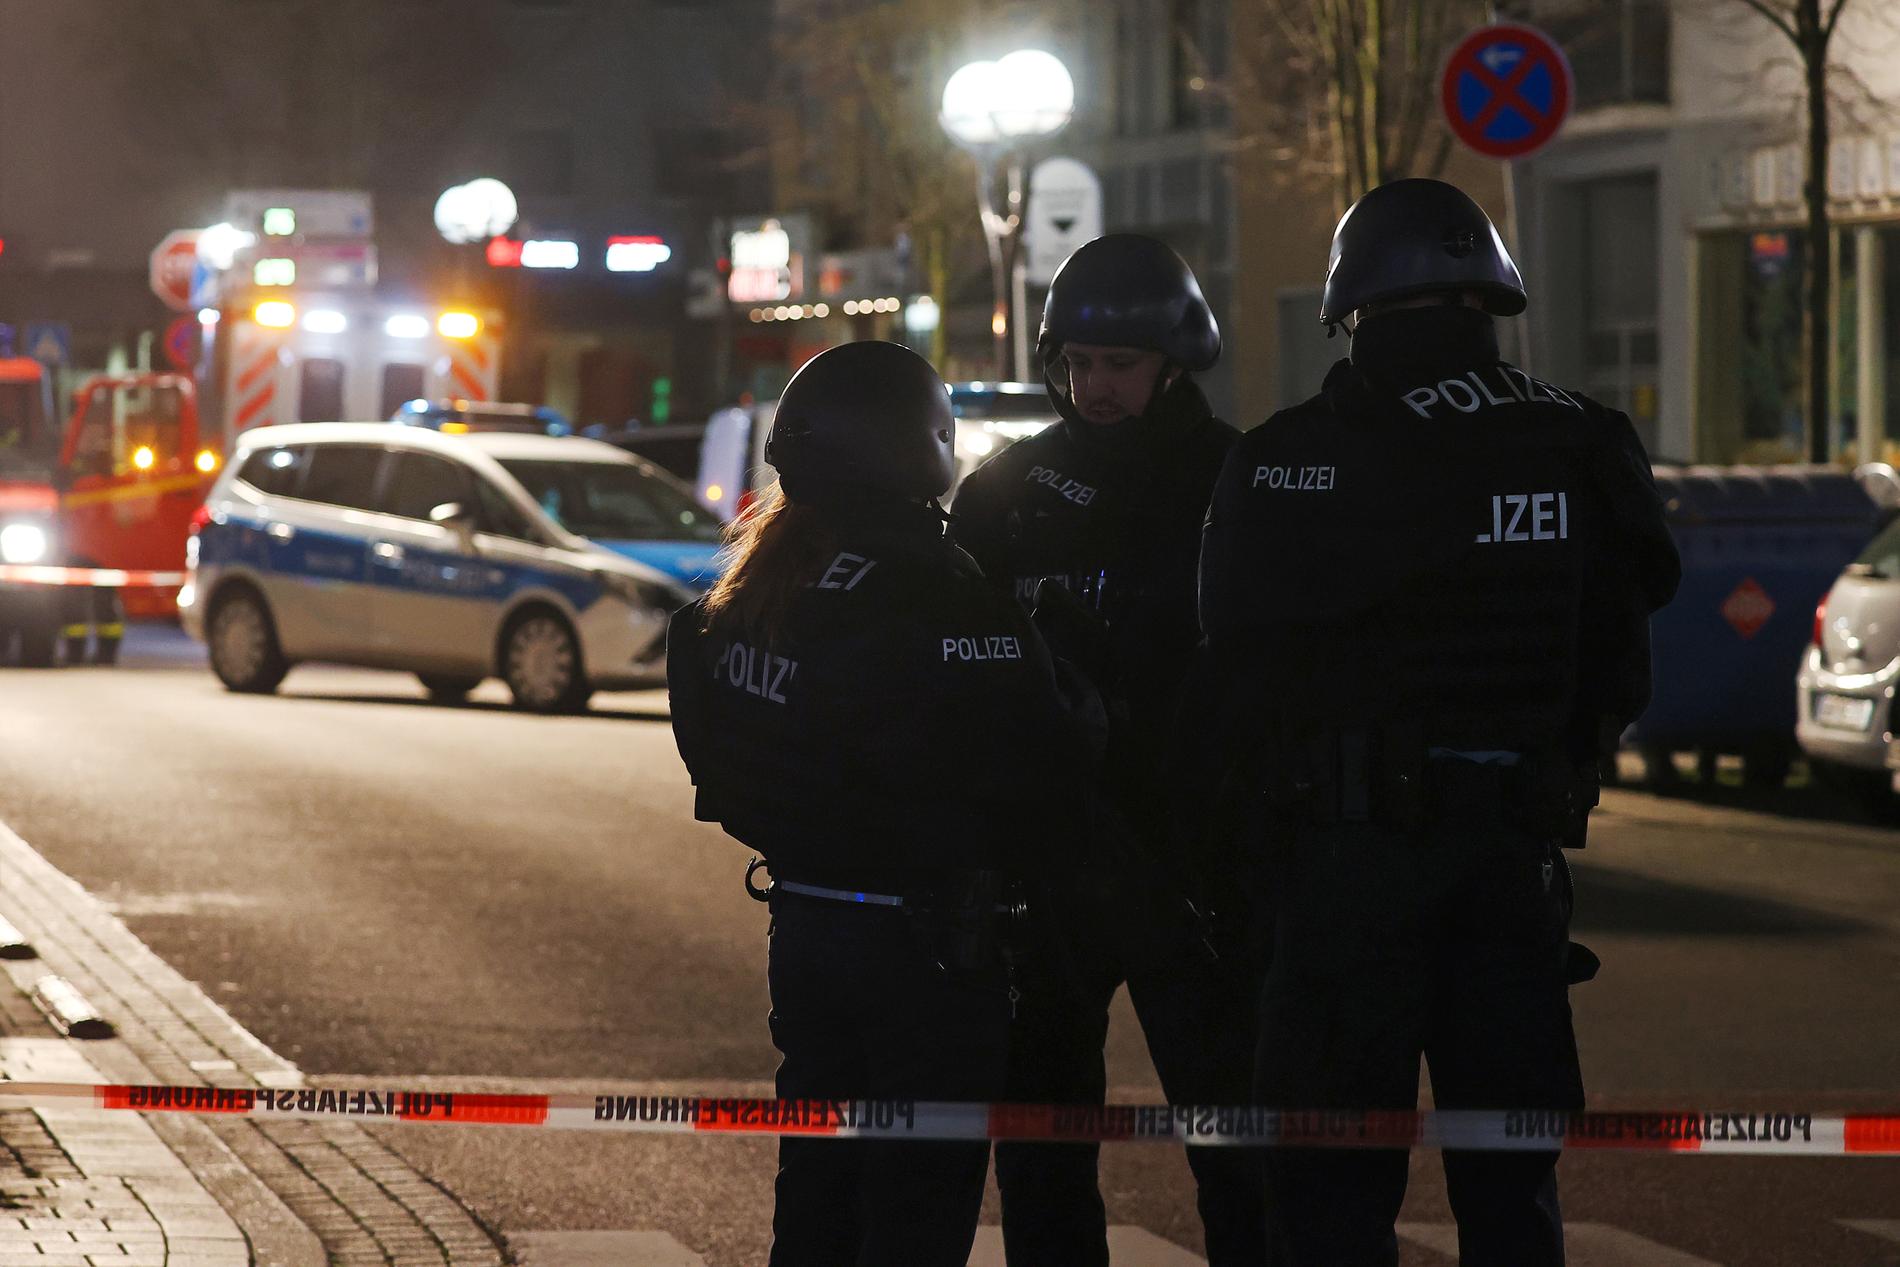 Polis spärrade av ett område kring ett vattenpipskafé i Hanau efter en skottlossning då flera personer dödades.